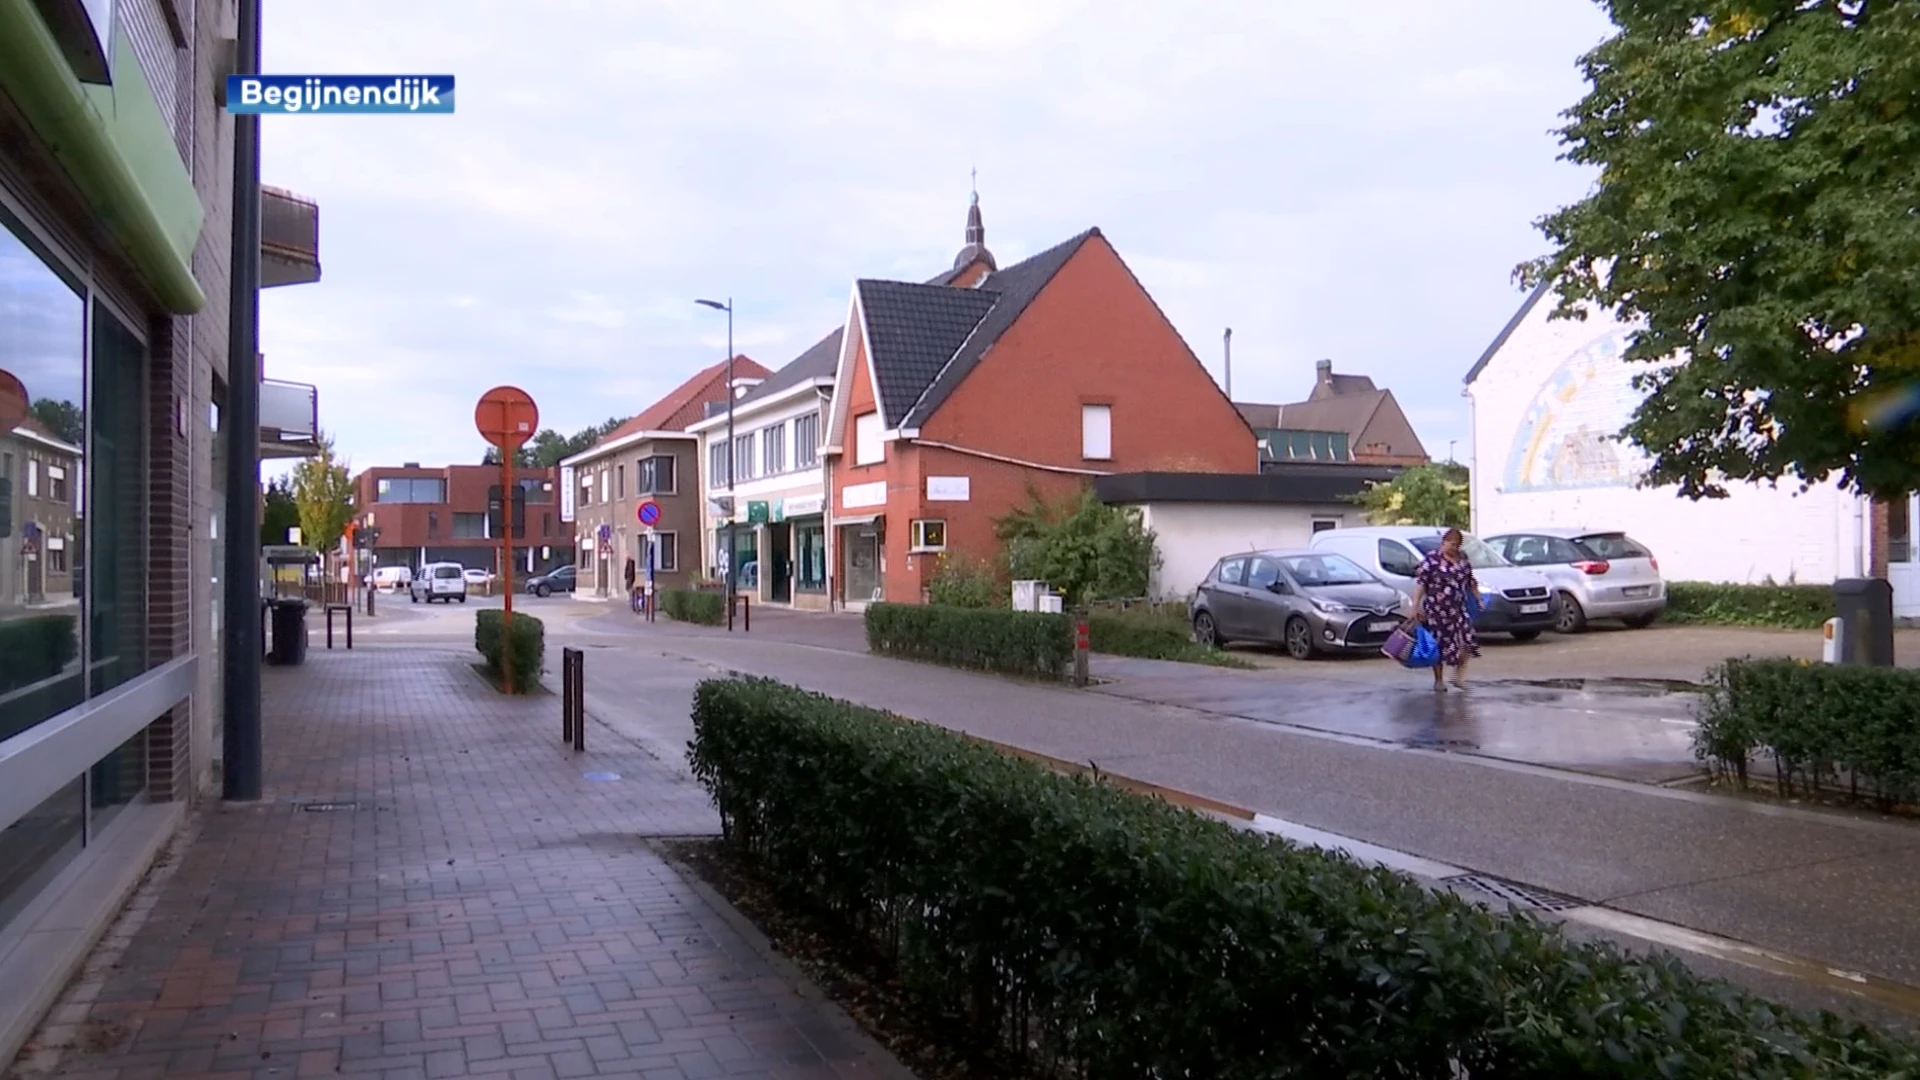 Twee bekende handelszaken trekken weg uit centrum Begijnendijk : "Gemeente heeft nood aan meer horeca"